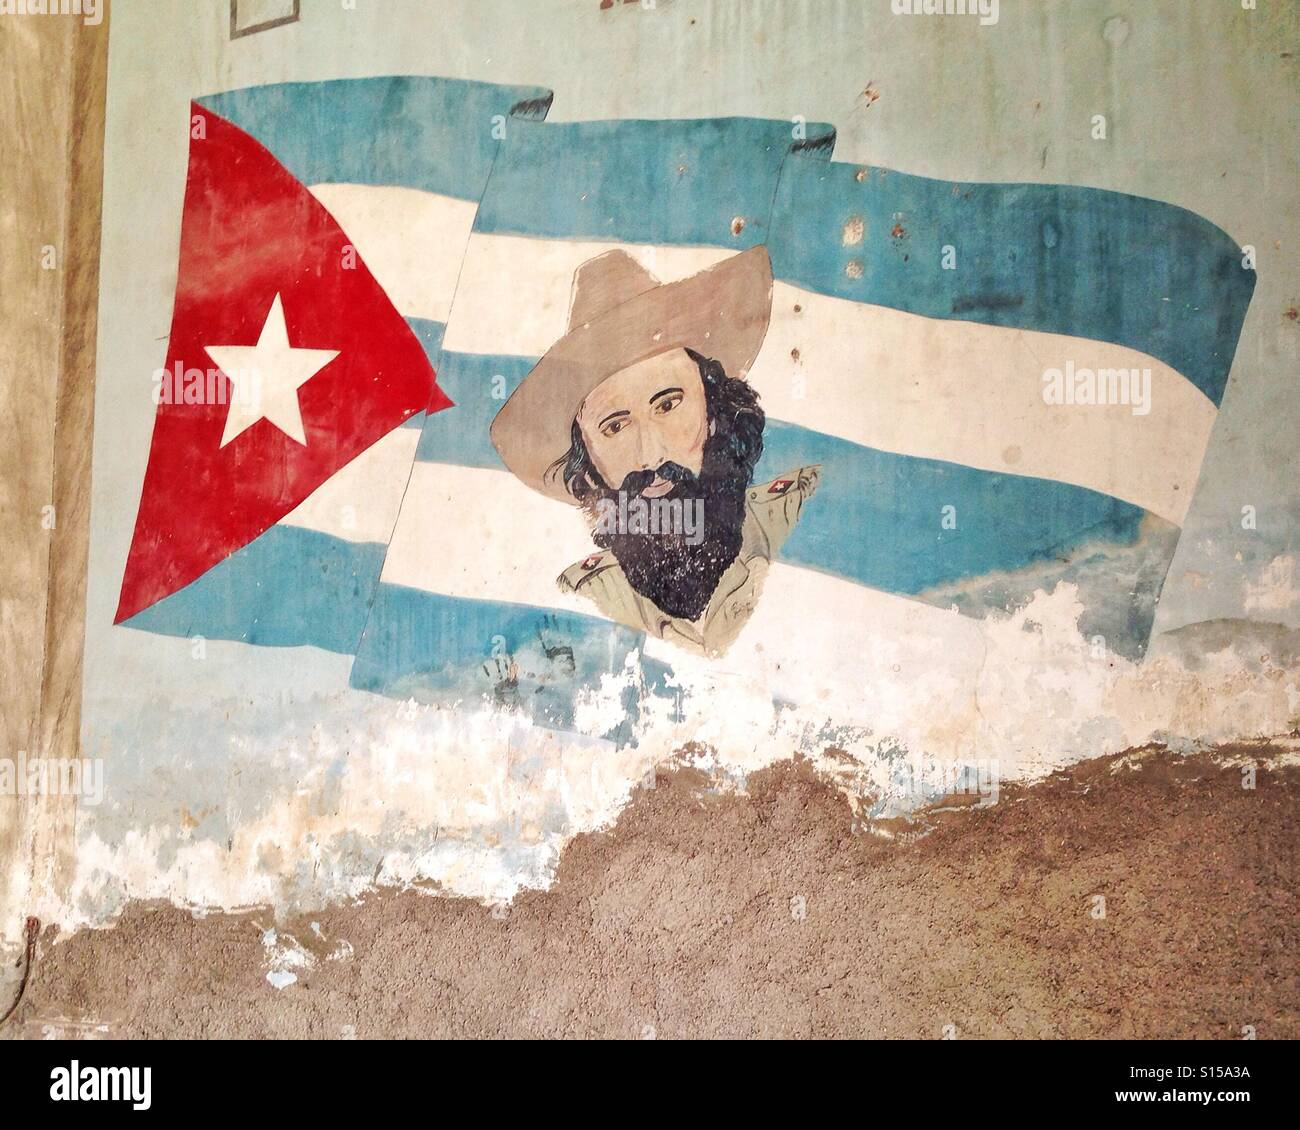 Graffiti in Havana Cuba Stock Photo